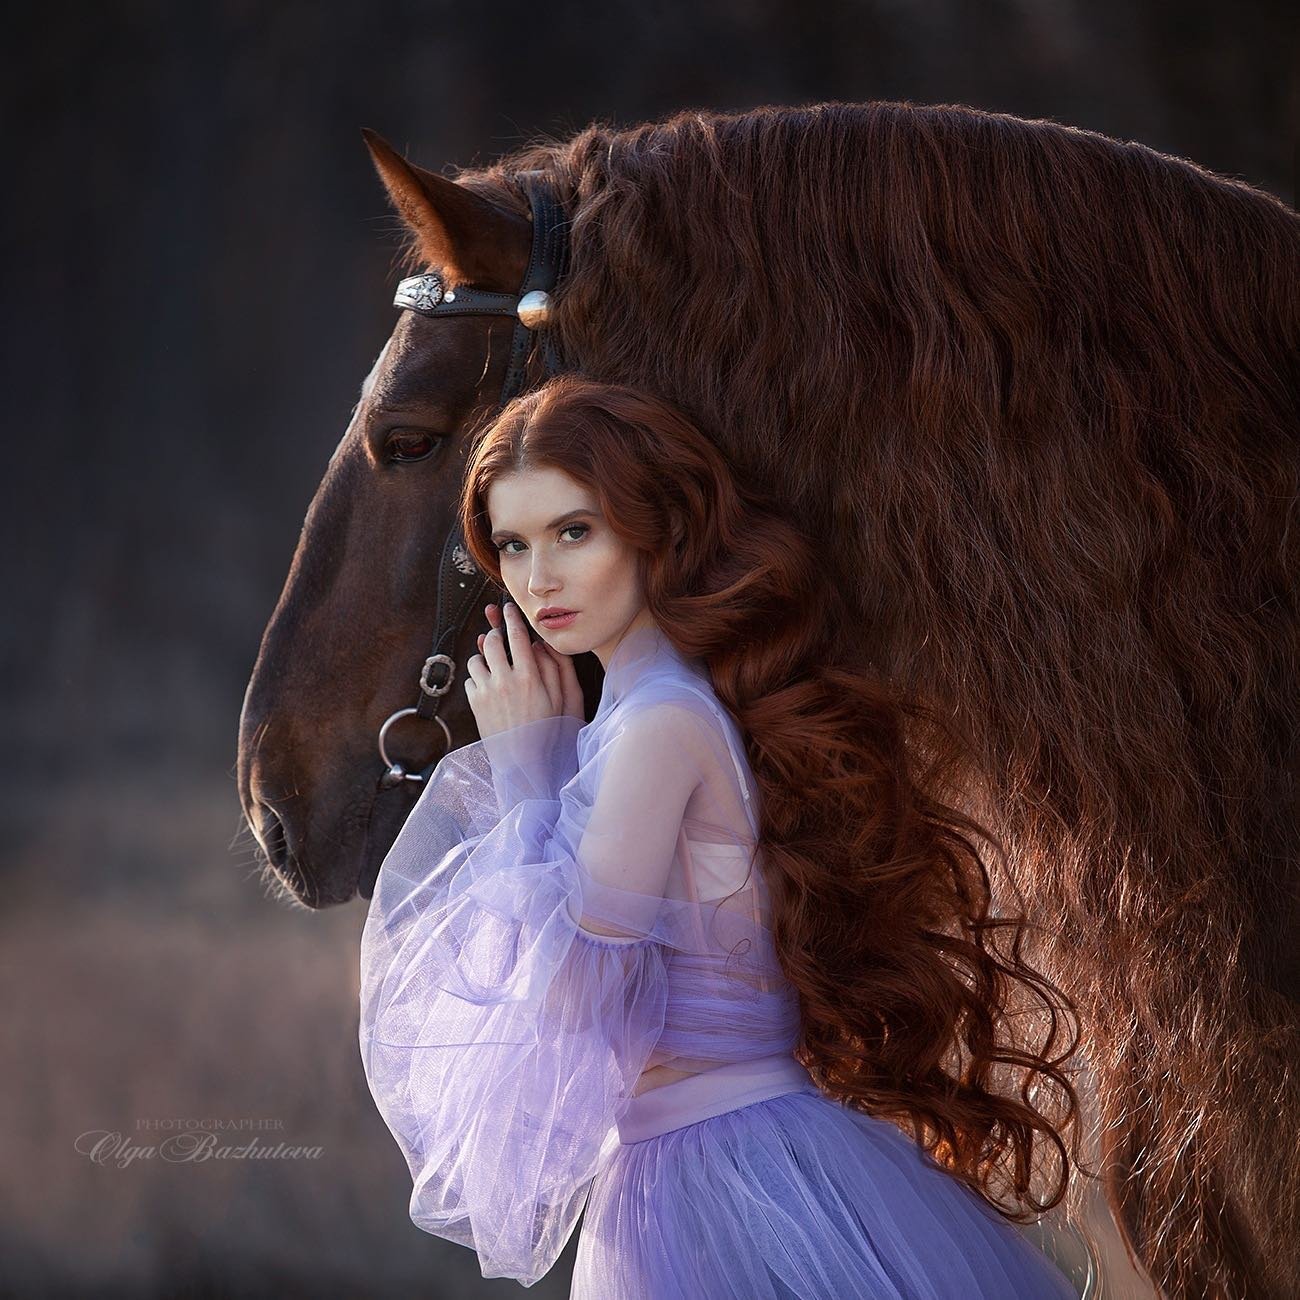 Olga Bazhutova fotografia equestre - Modelo ruiva posando para ensaio ao lado de cavalo